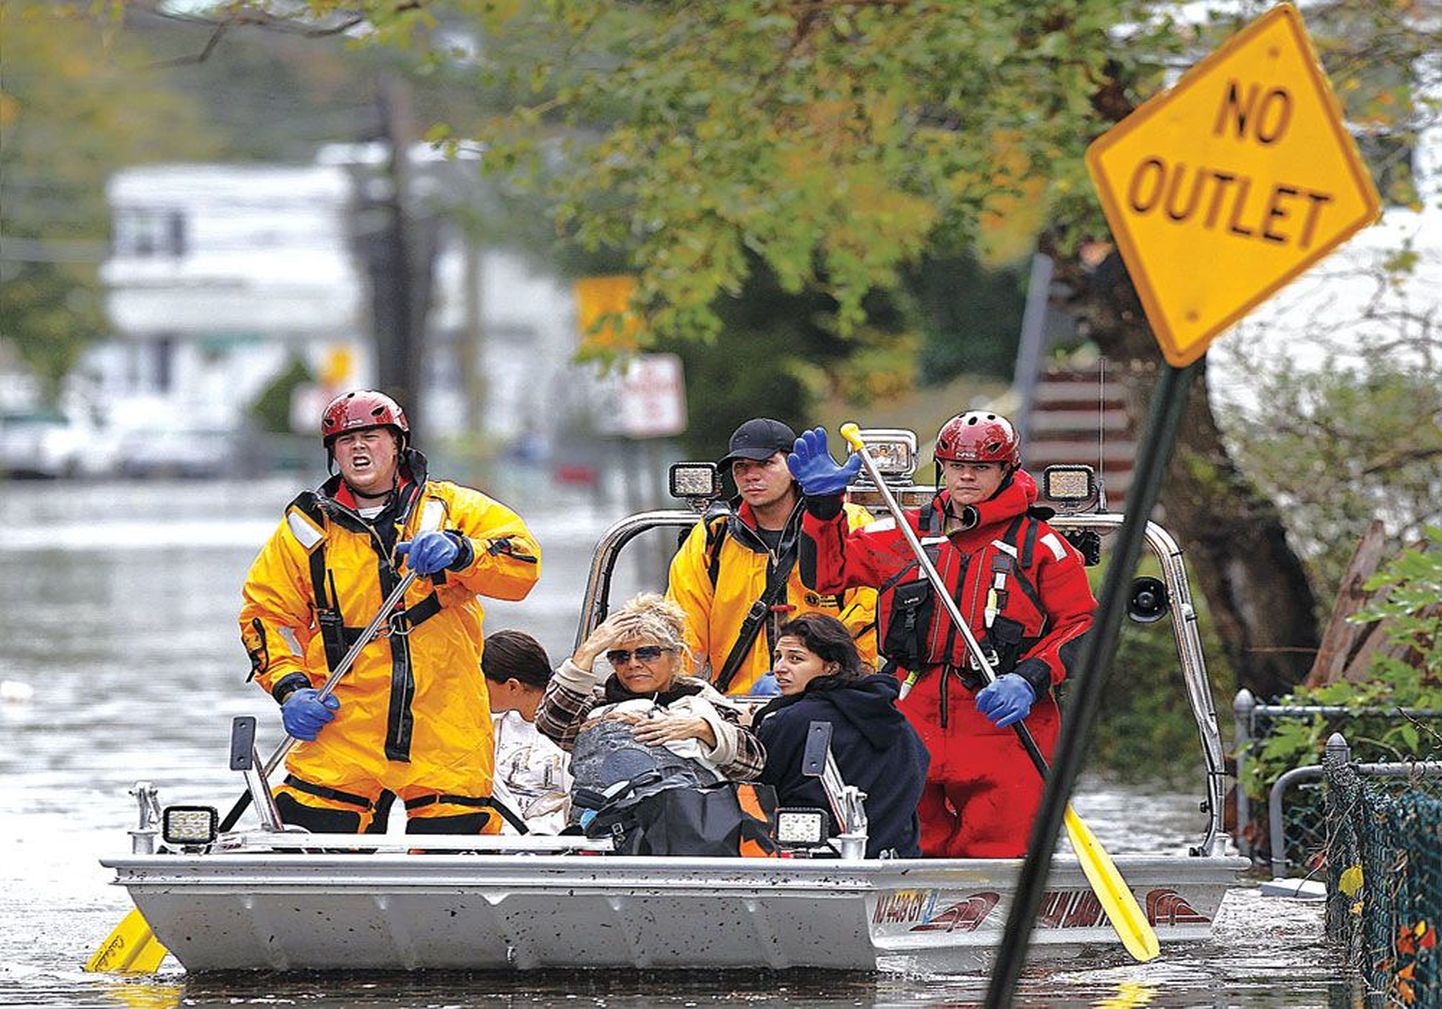 Дамба близ городов Муначи, Литл Ферри и Карлштадт на севере штата Нью-Джерси 30 октября была прорвана потоками воды, в результате чего все три населенных пункта оказались затоплены. На месте бедствия в Литл Ферри работают спасатели.